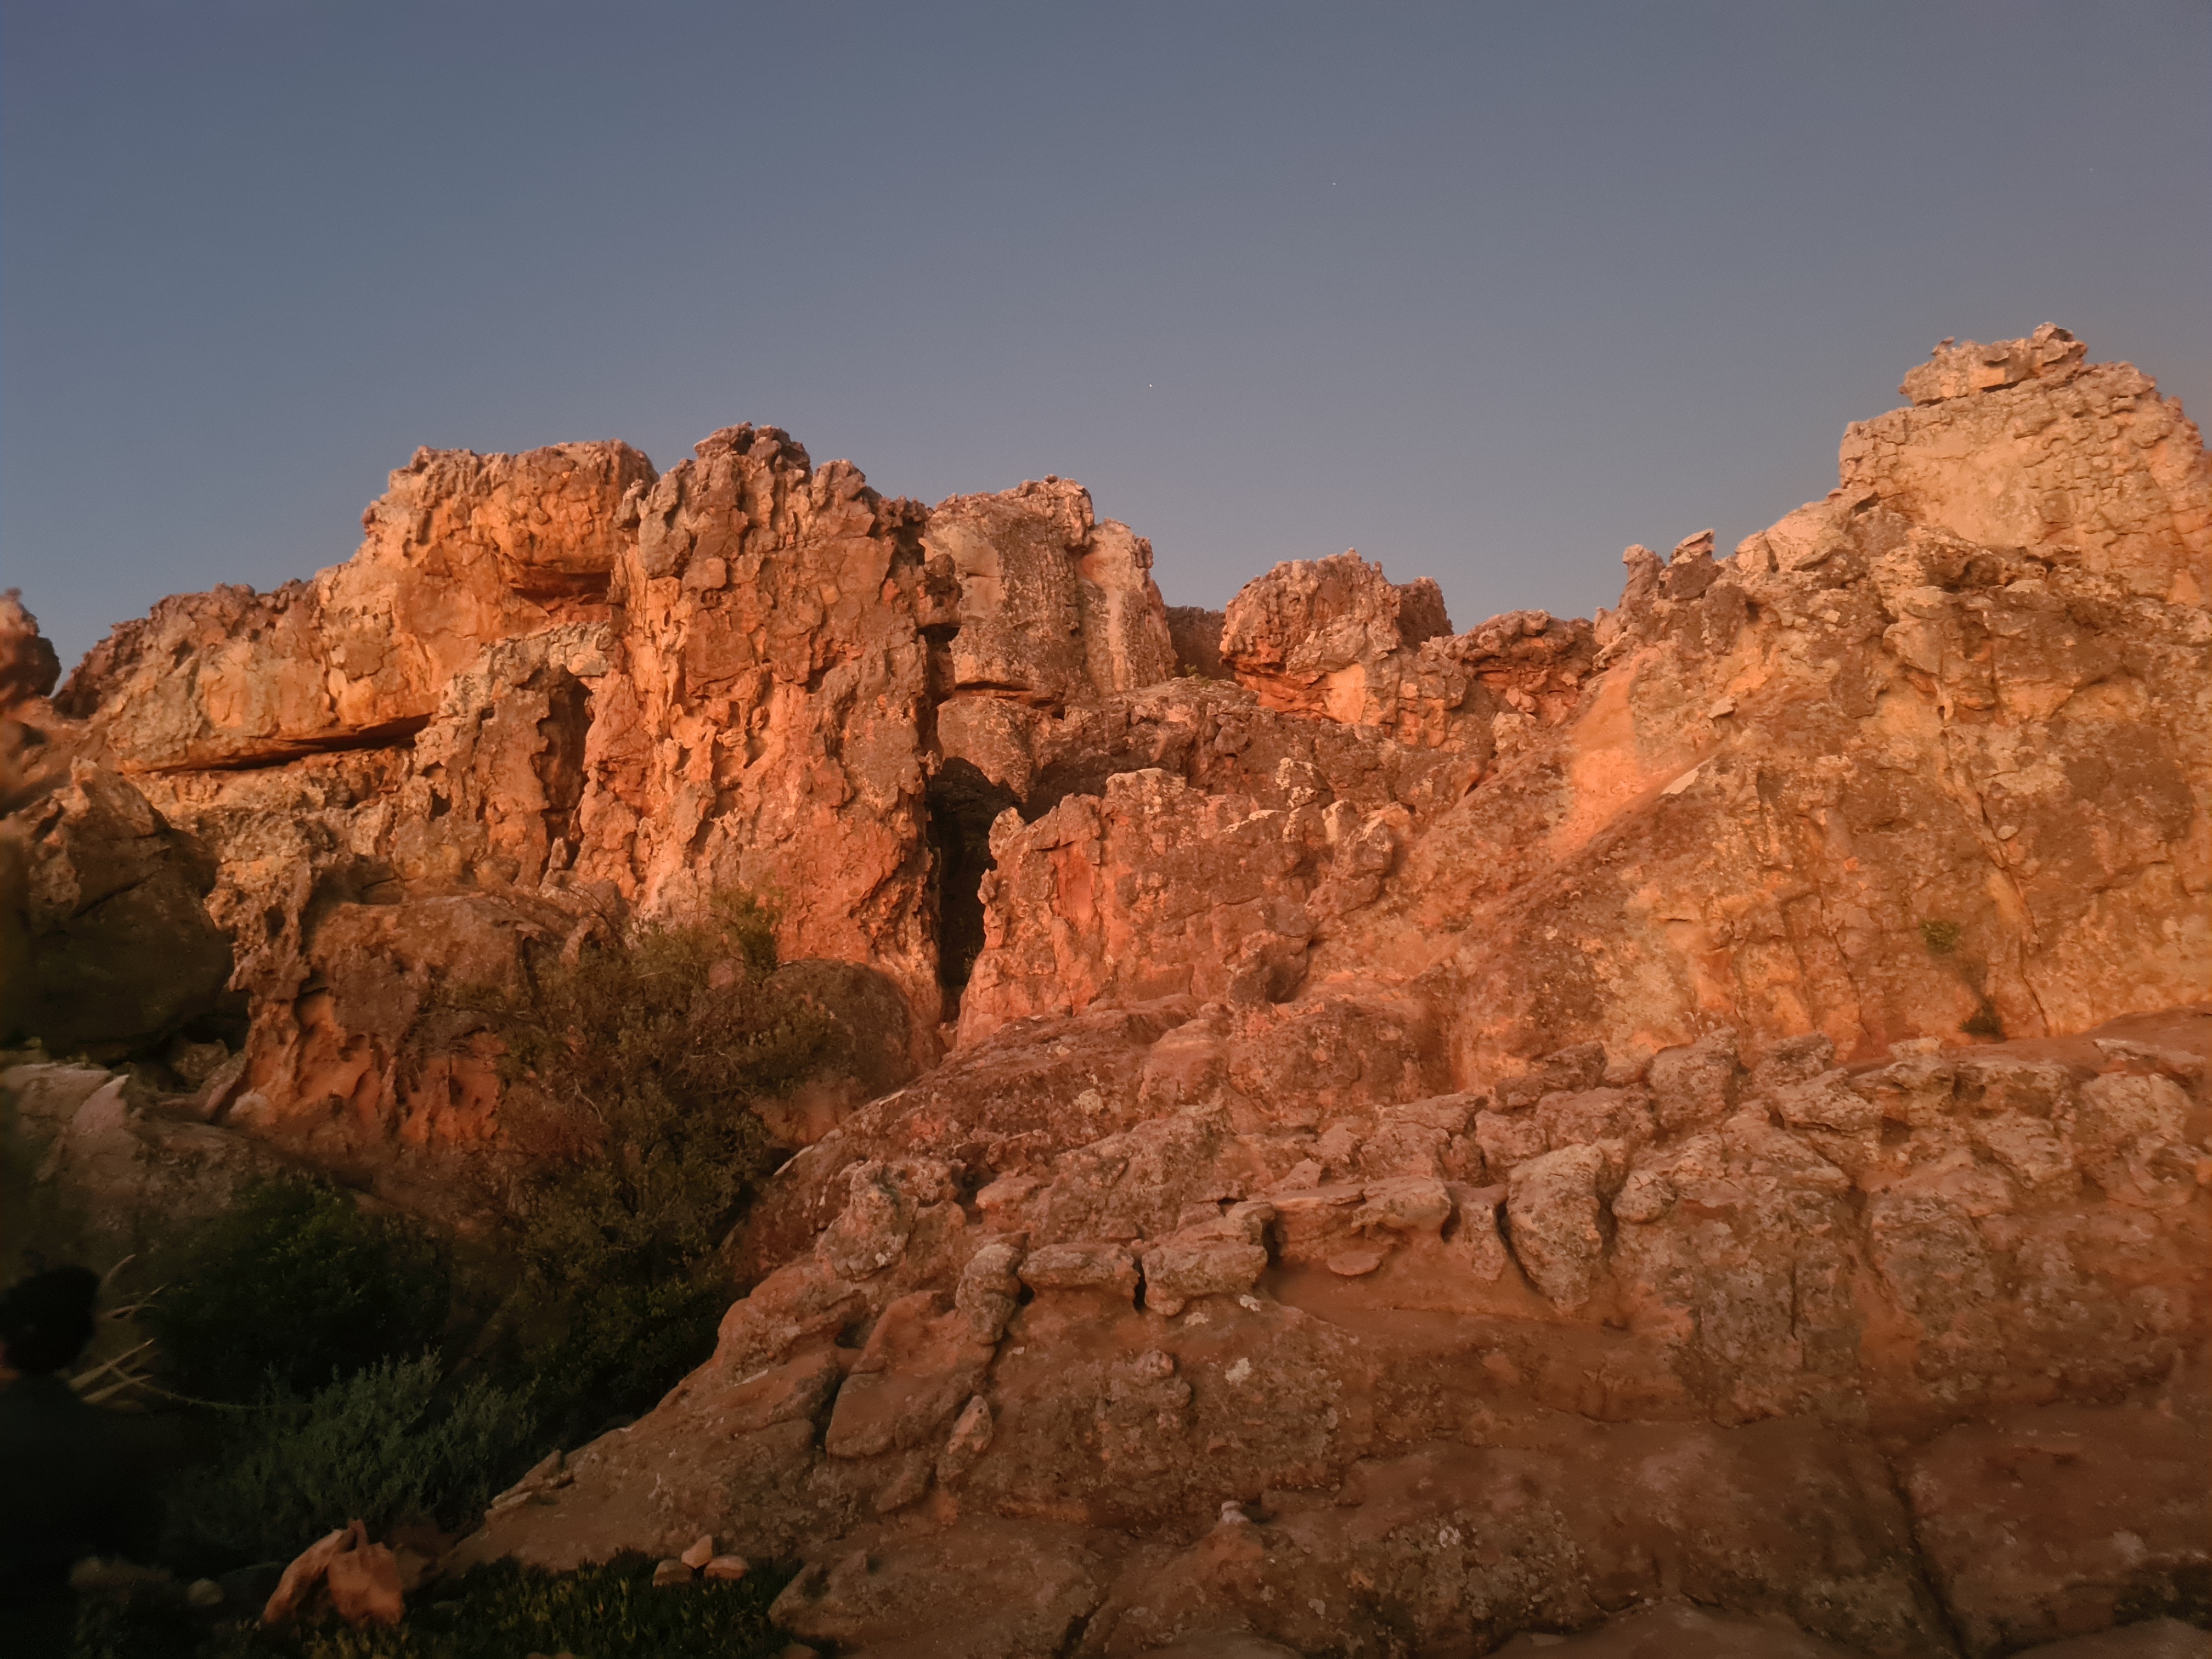 Sandstone rock formations aglow at dusk. Image: Carmen Clegg